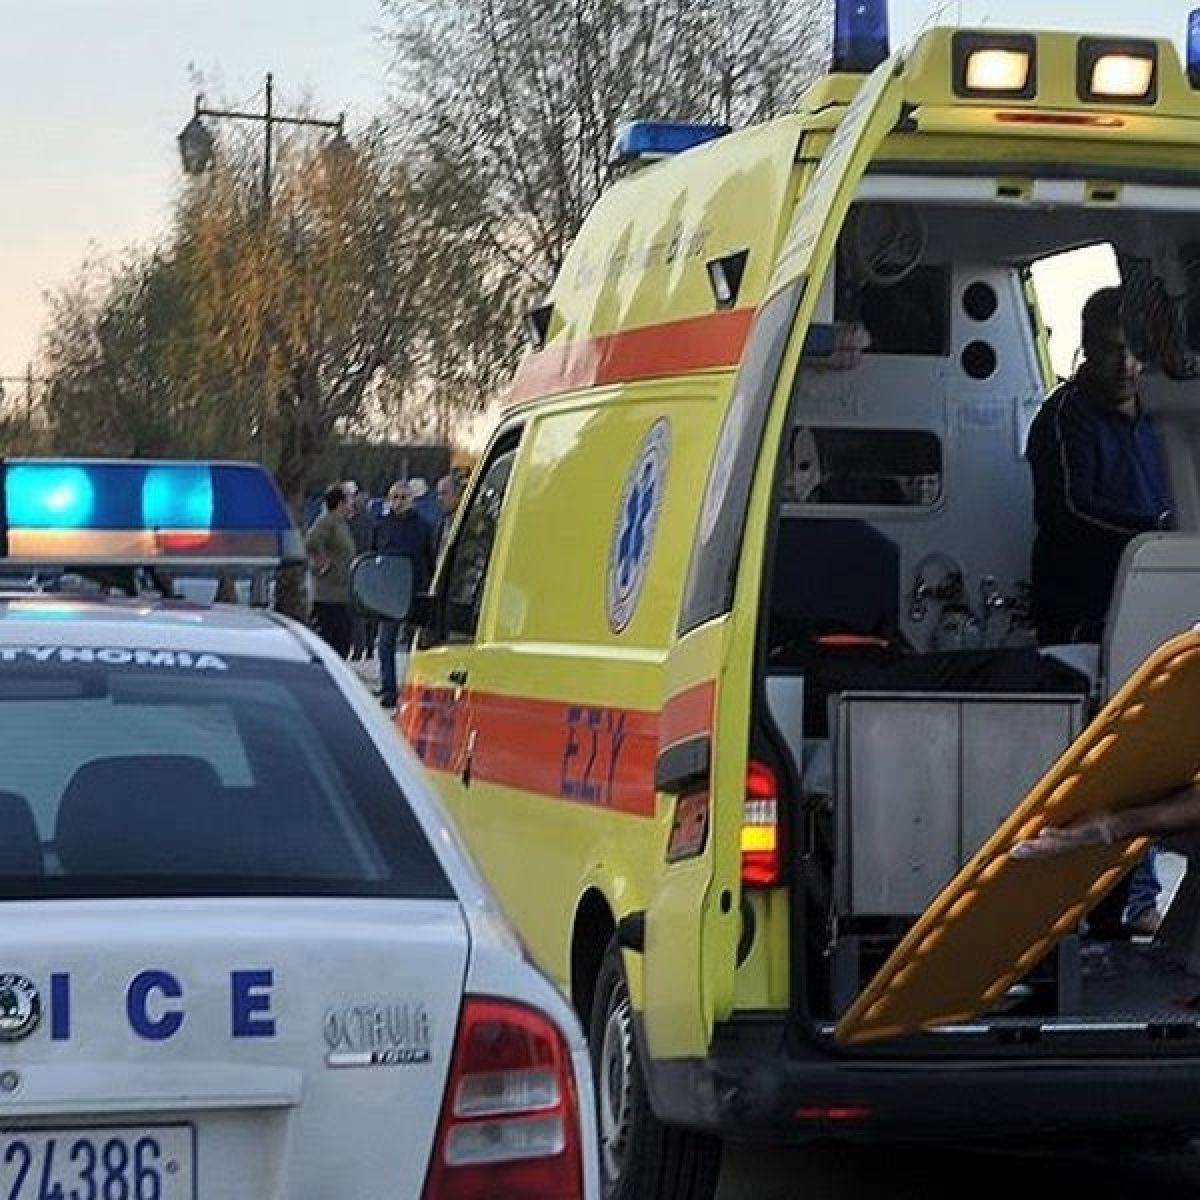 Τέσσερις νεκροί και 18 τραυματίες σε τροχαία ατυχήματα μέσα σε ένα μήνα στην Περιφέρεια Πελοποννήσου